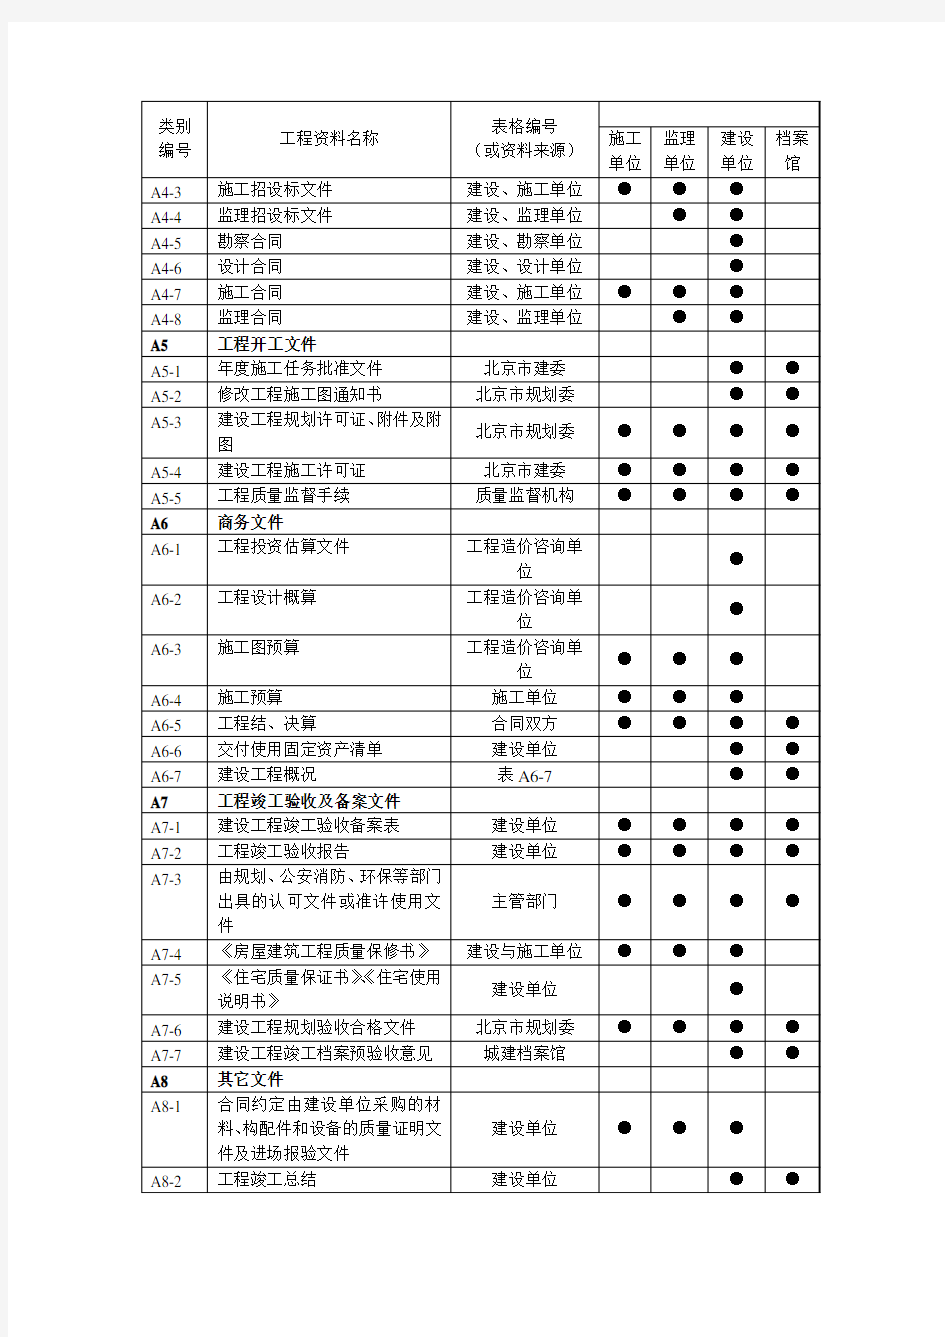 常见工程资料分类表案例(以北京为例)